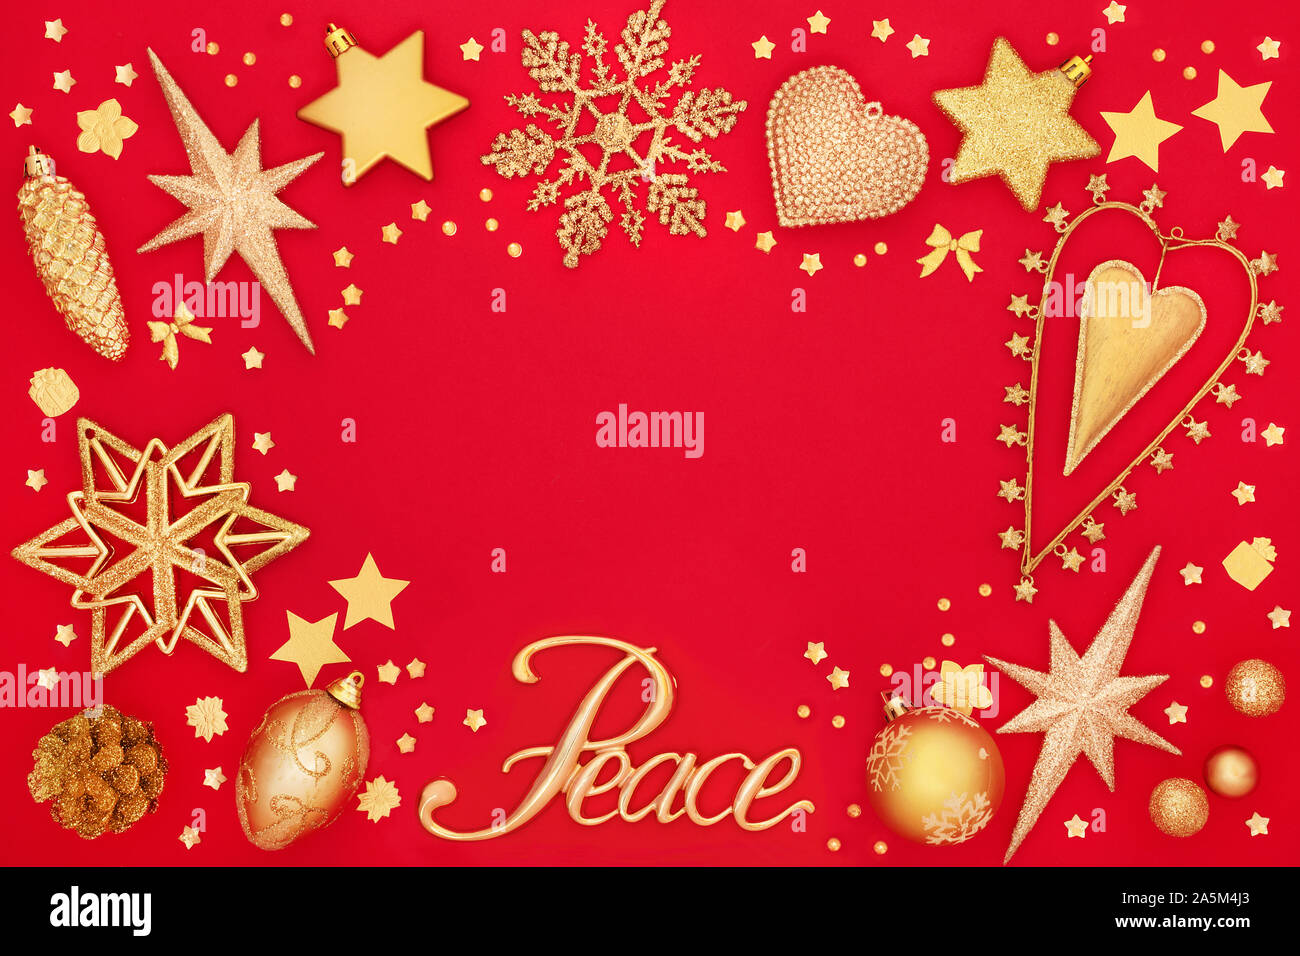 Bordure de l'arrière-plan de Noël avec de l'or signe de paix et de star et décorations babiole sur rouge. Carte de vœux traditionnels pour les fêtes. Banque D'Images